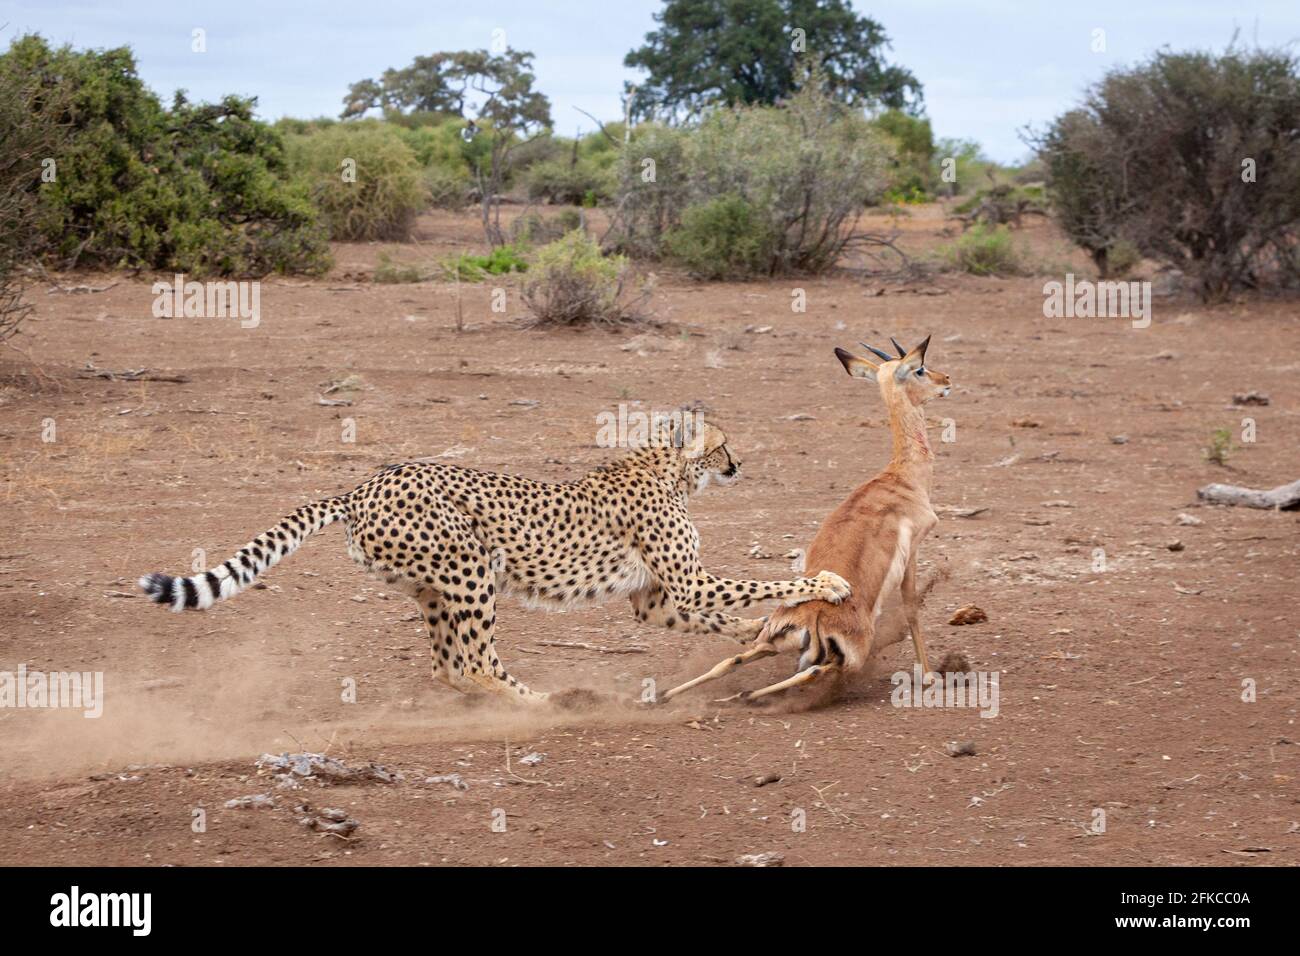 La mère a d'abord fait descendre l'impala pour que ses petits mangent. MASHATU GAME RESERVE, BOTSWANA: VOIR le moment OÙ QUATRE cheetahs ont lutté un pauvre ANTELOP Banque D'Images